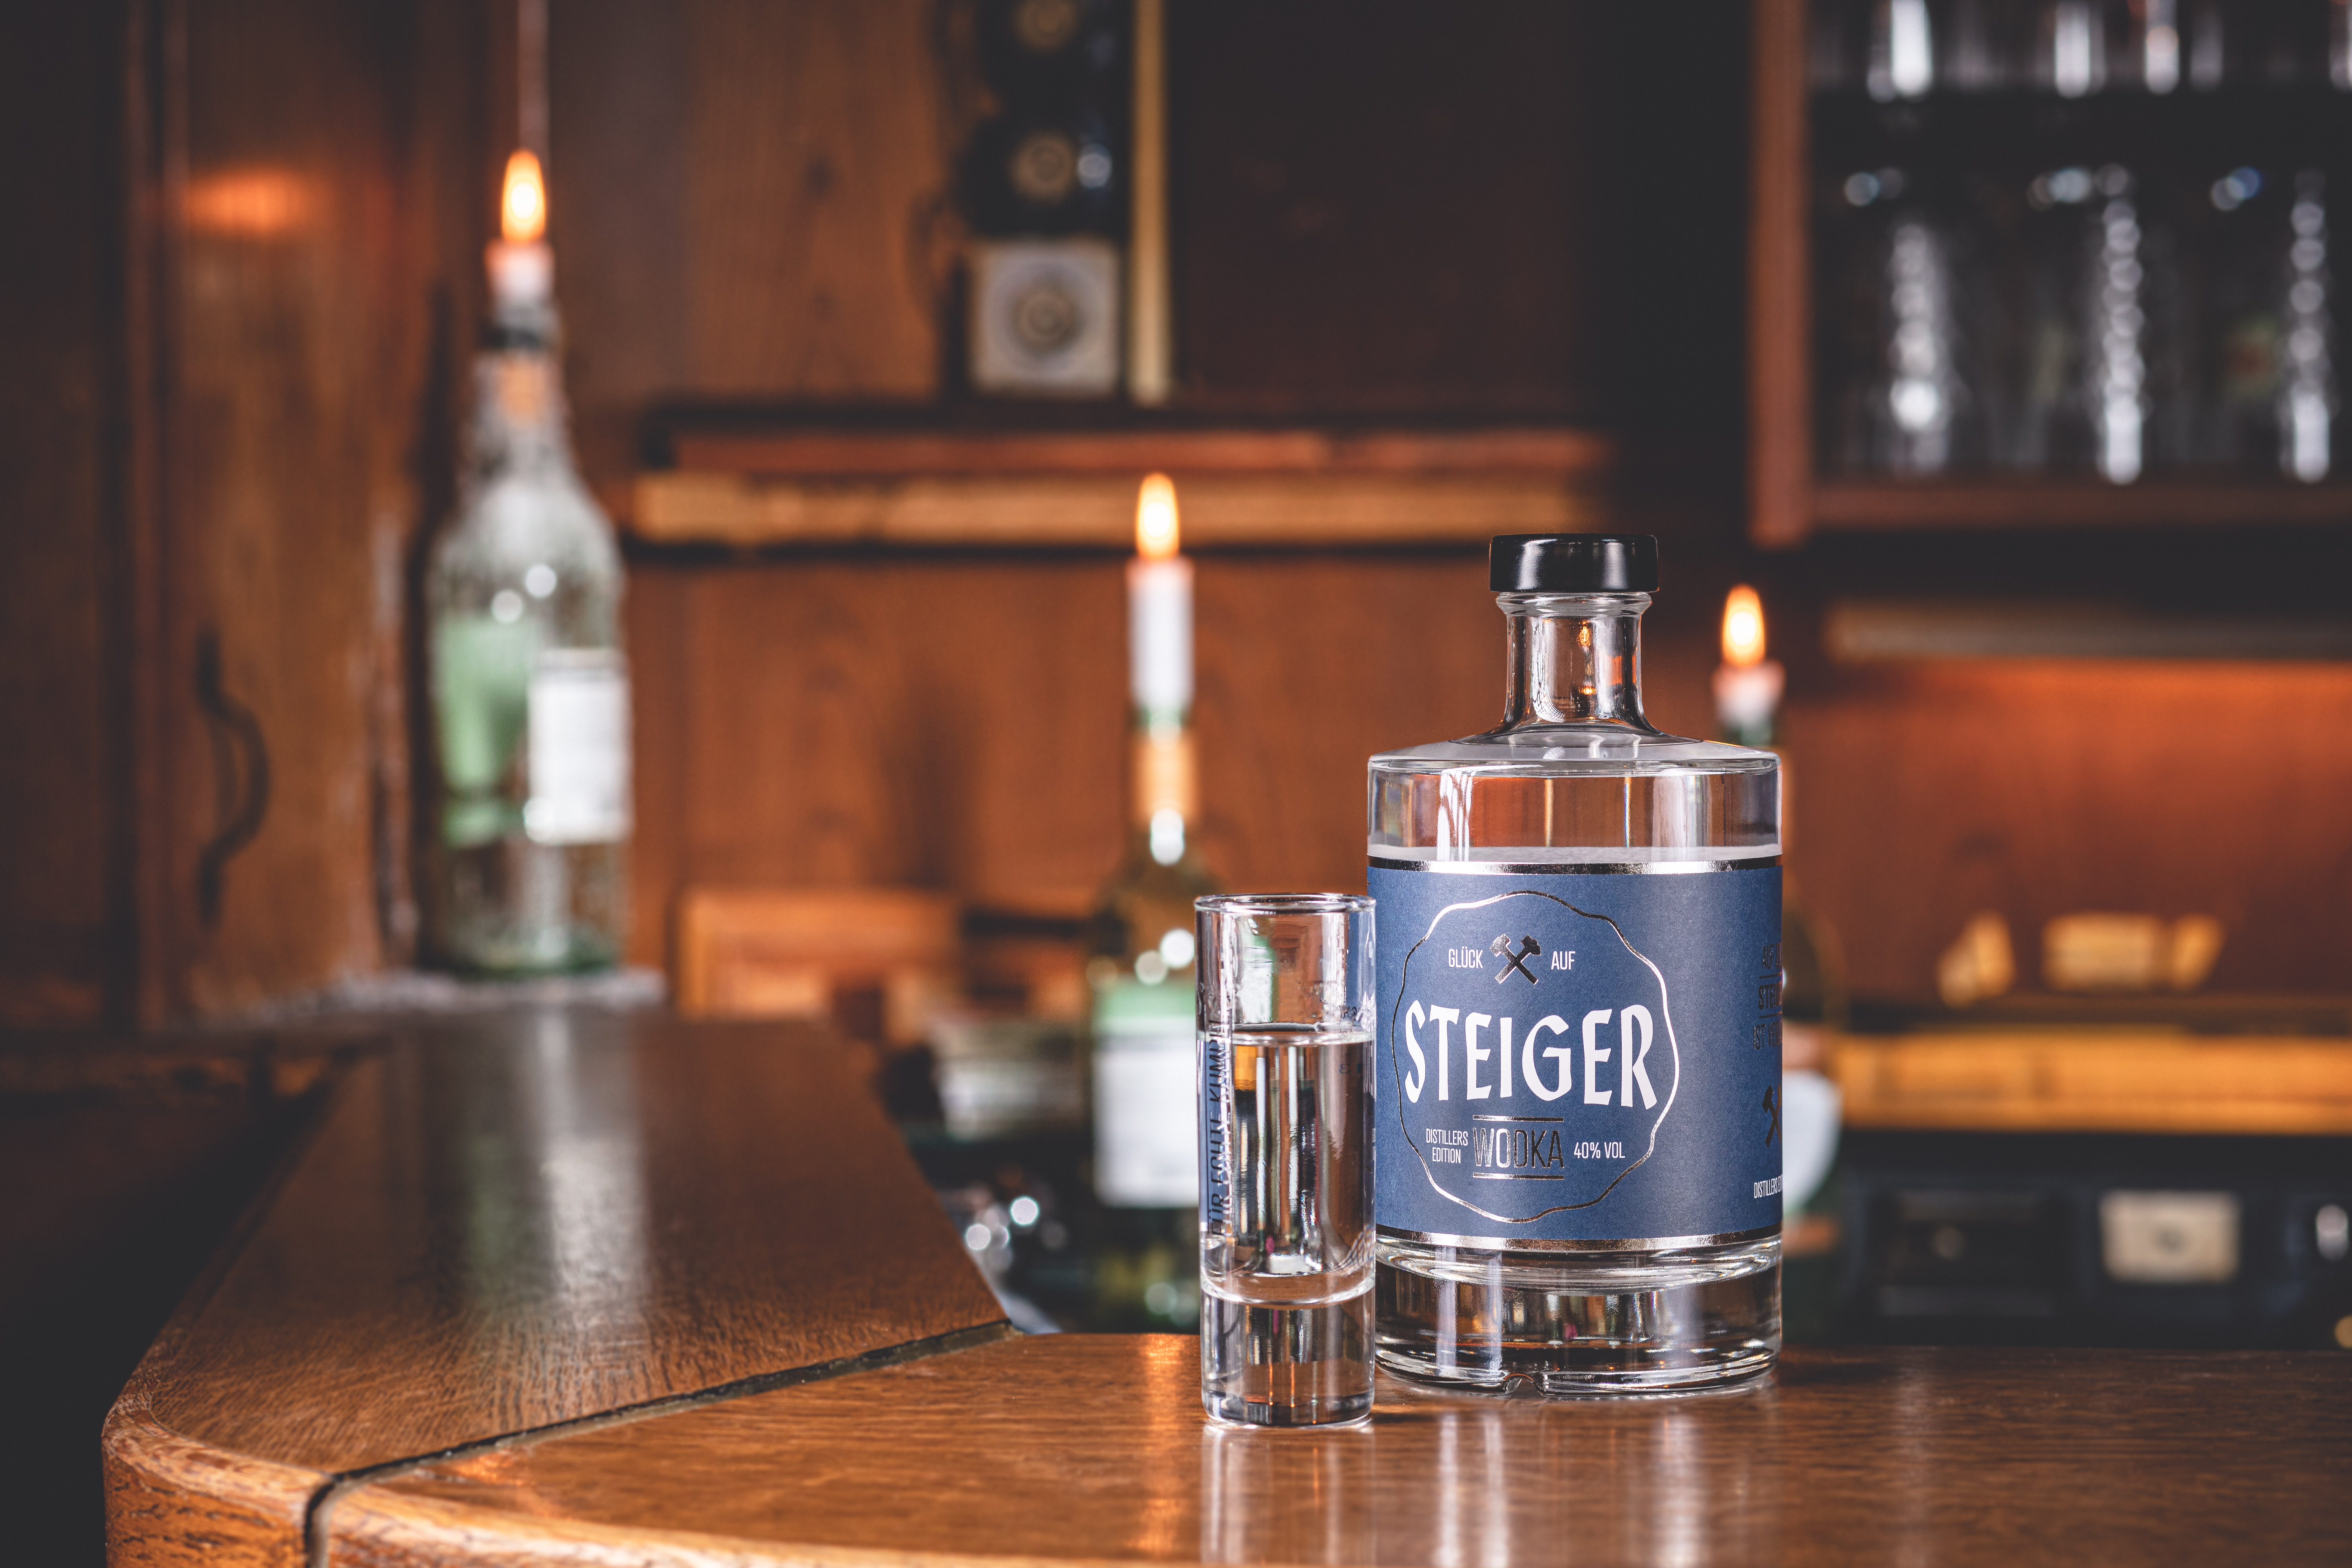 Steiger Wodka - Distillers Edition inkl. Gläser und Untersetzer